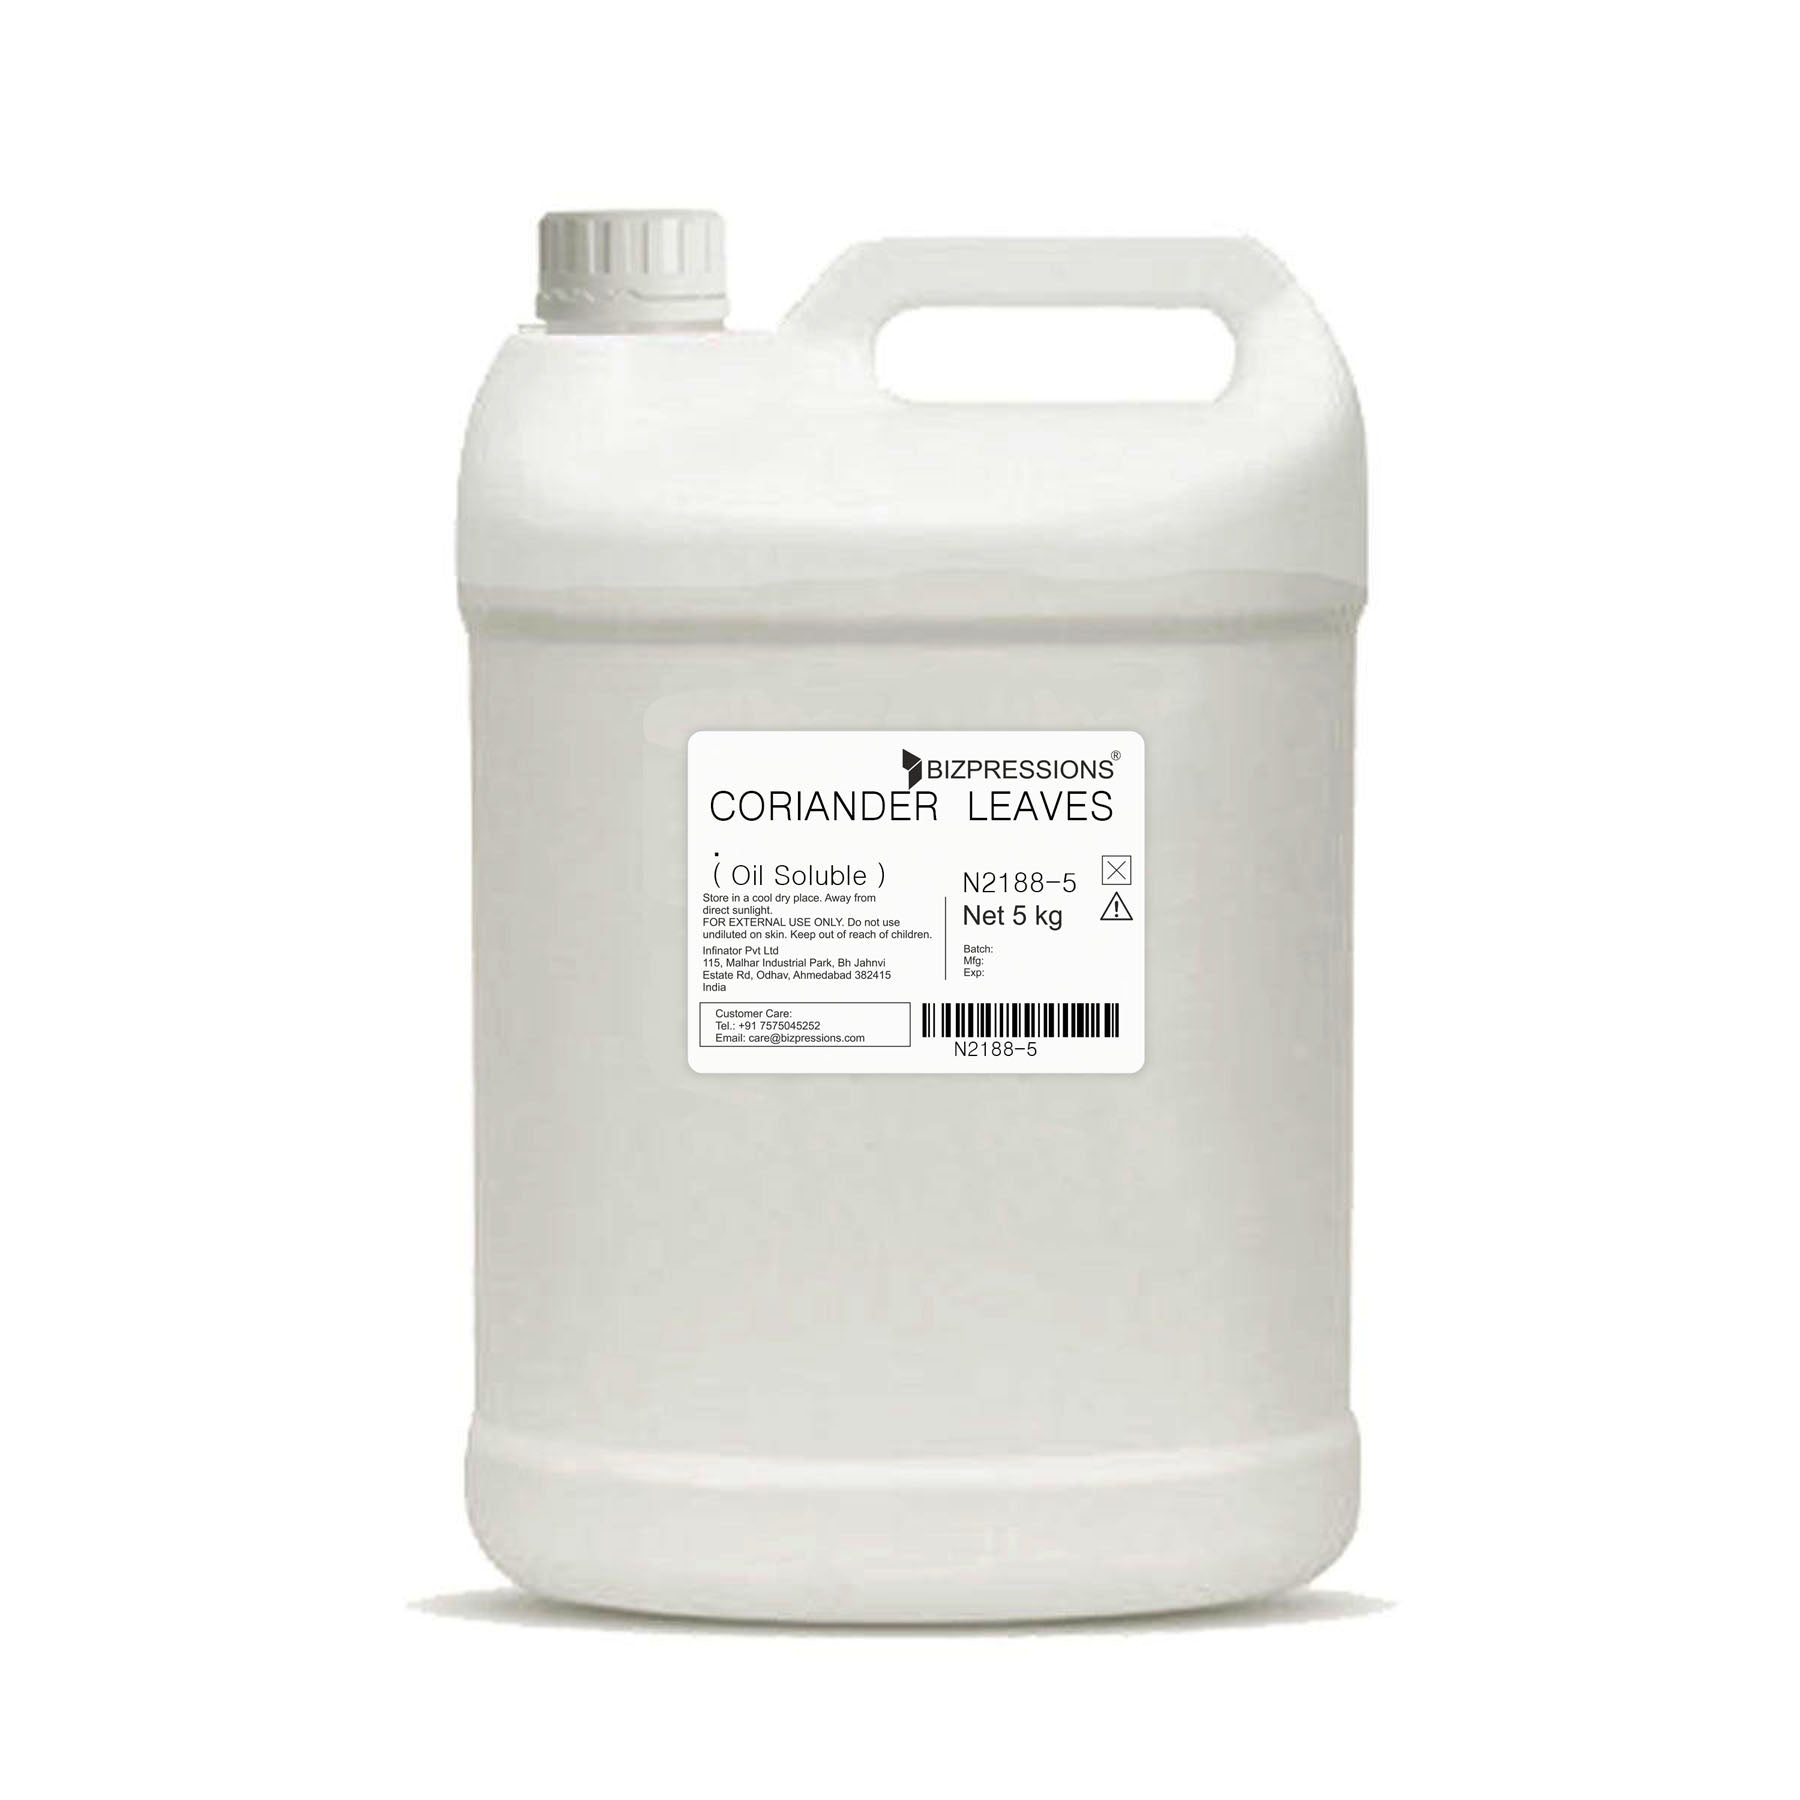 CORIANDER LEAVES - Fragrance ( Oil Soluble ) - 5 kg